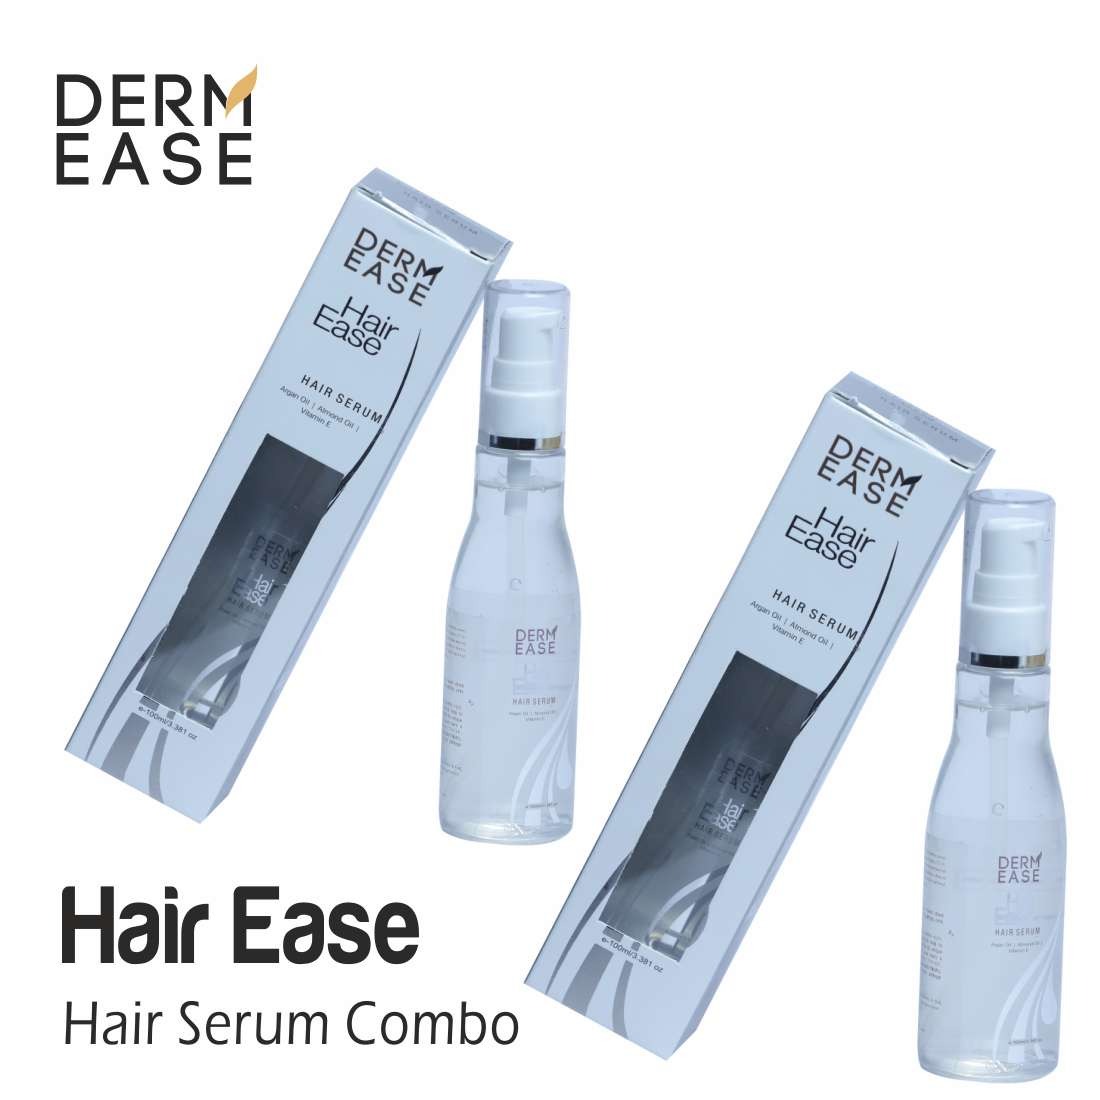 DERM EASE Hair Ease Hair Serum Combo